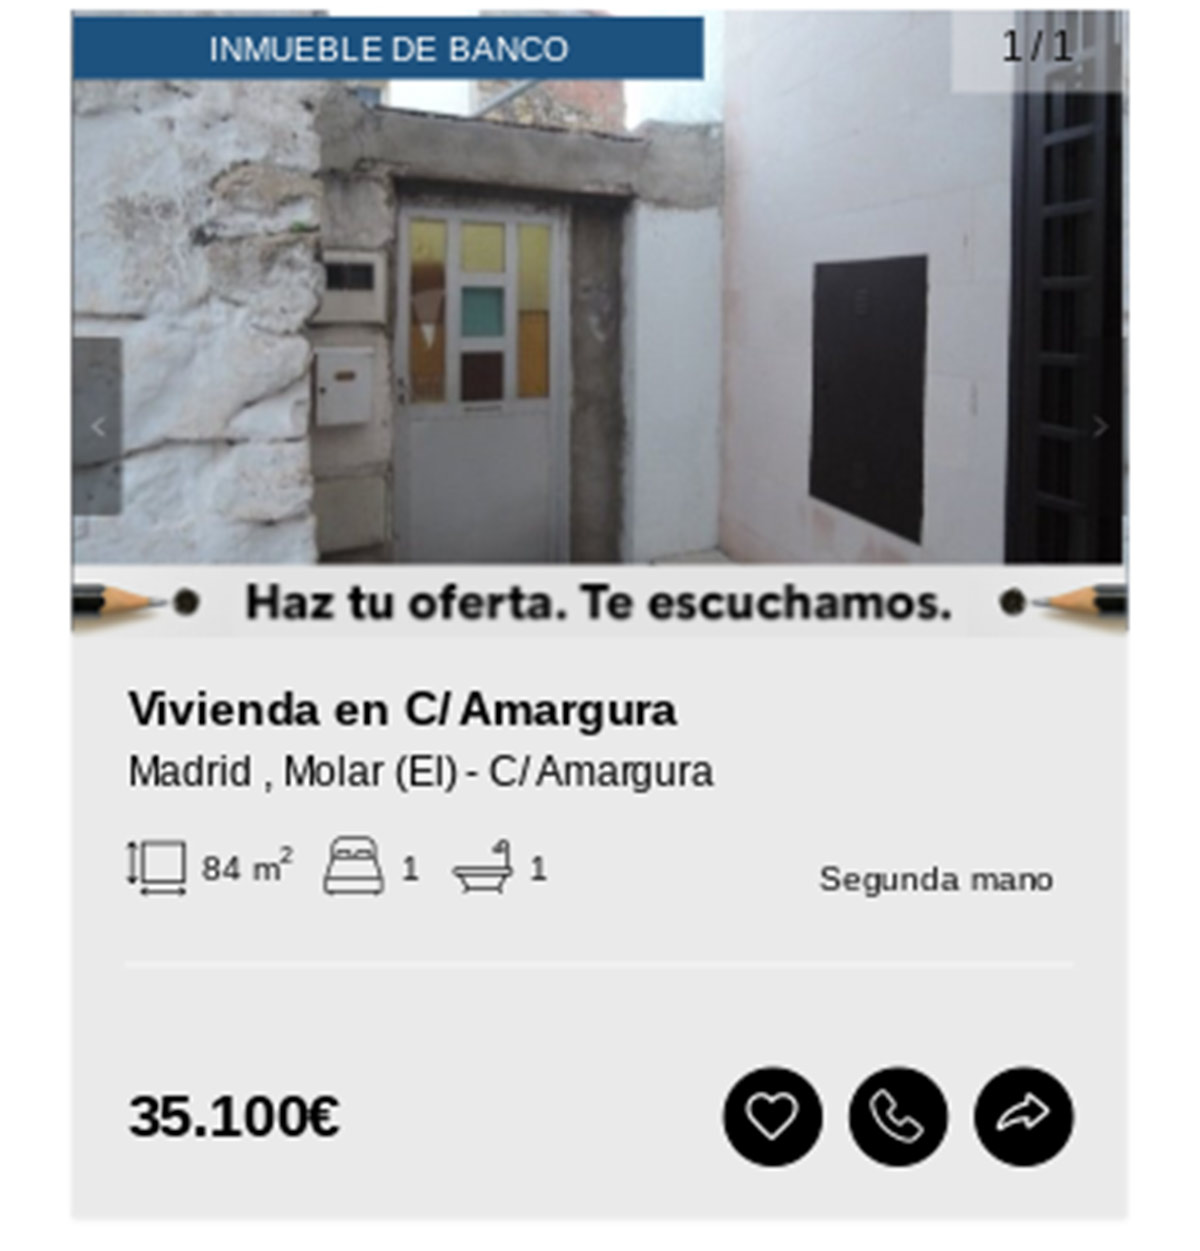 Piso en Madrid de Solvia por 35.100 euros